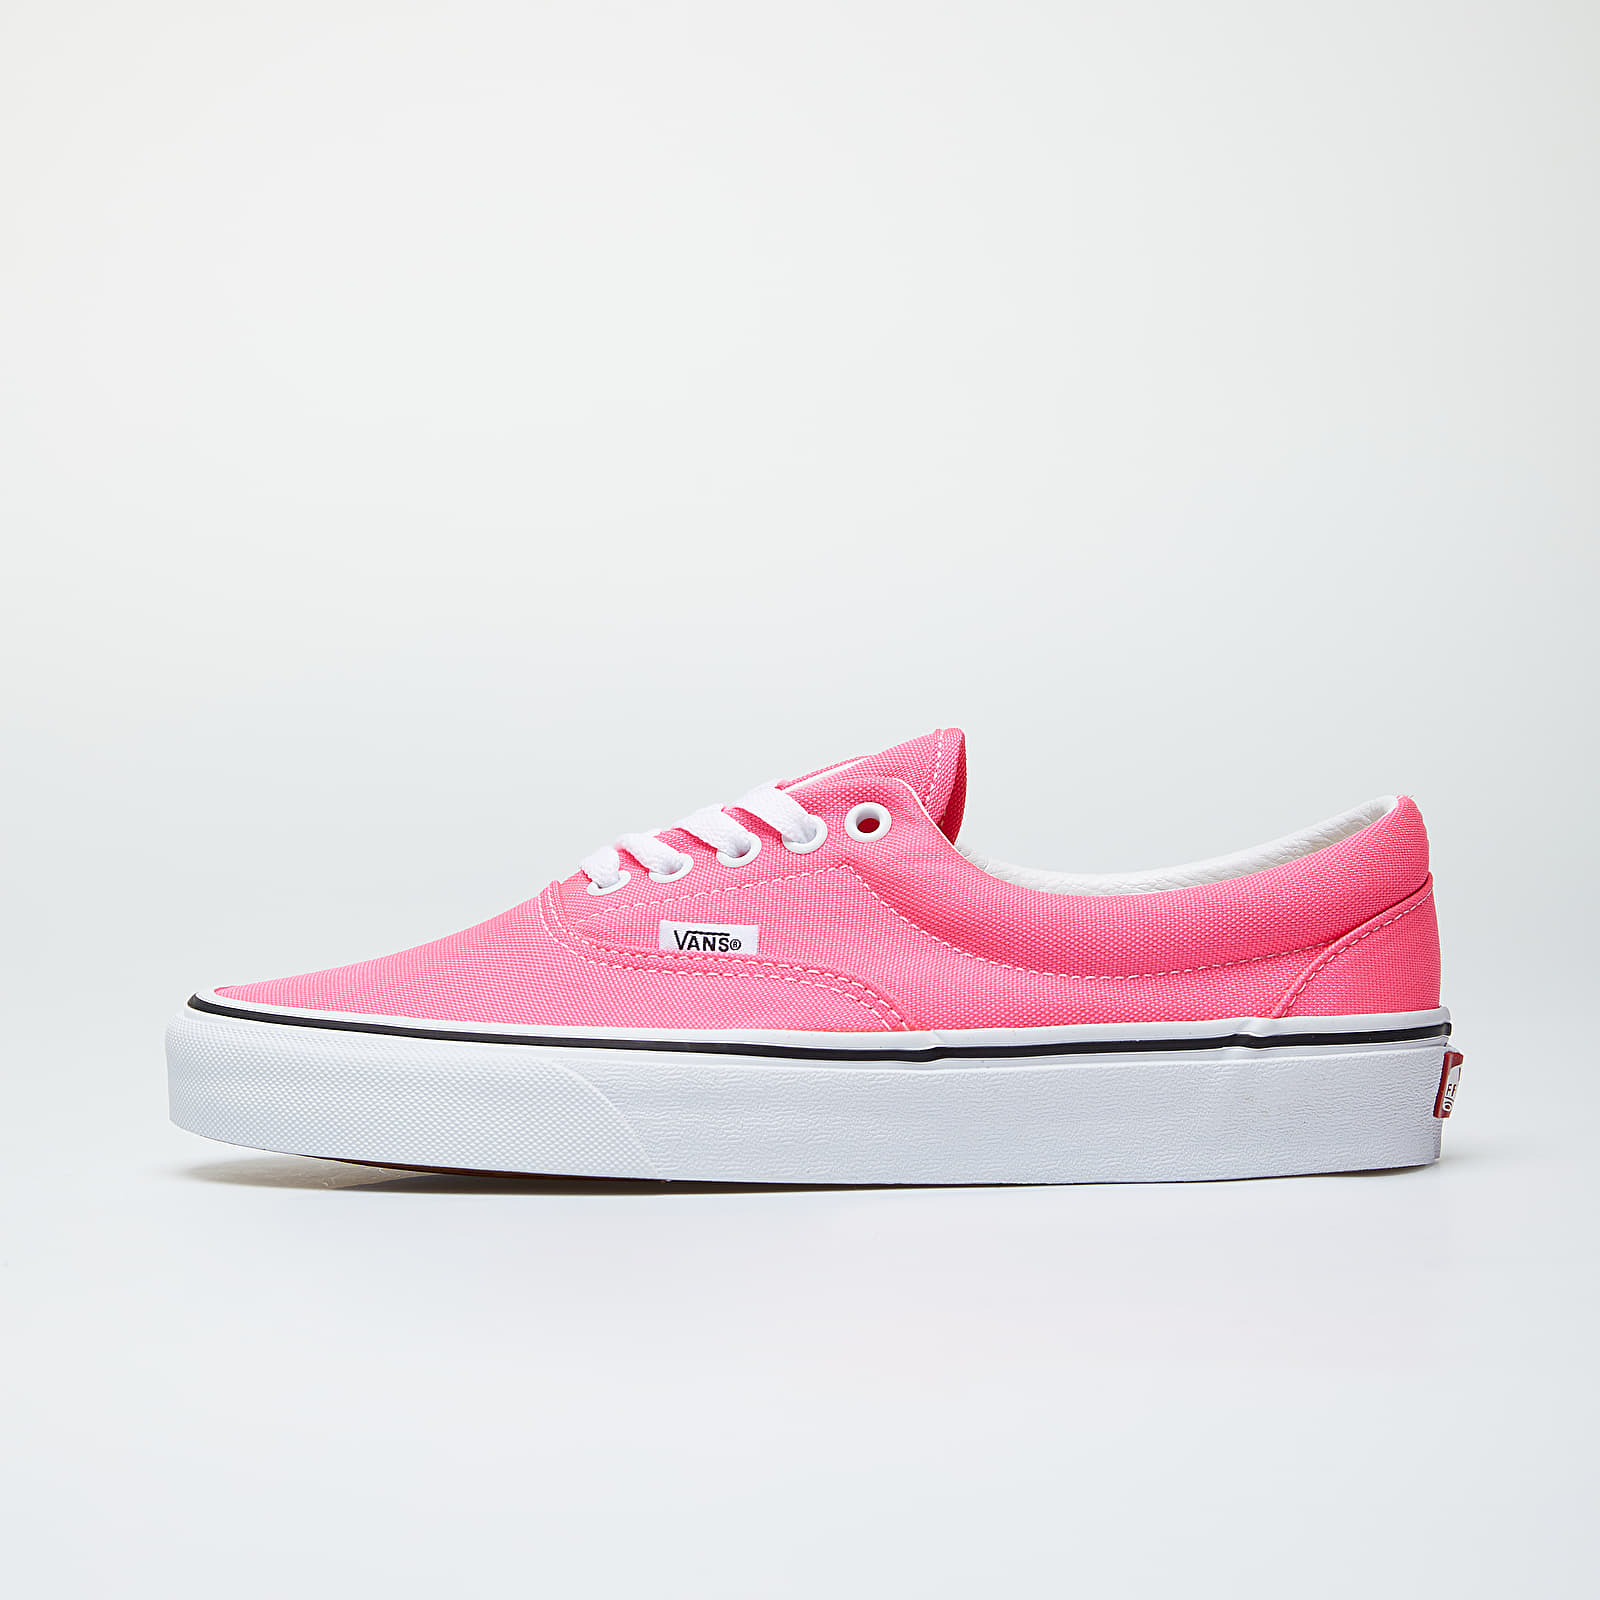 Încălțăminte și sneakerși pentru bărbați Vans Era (Neon) Knockout Pink/ True White